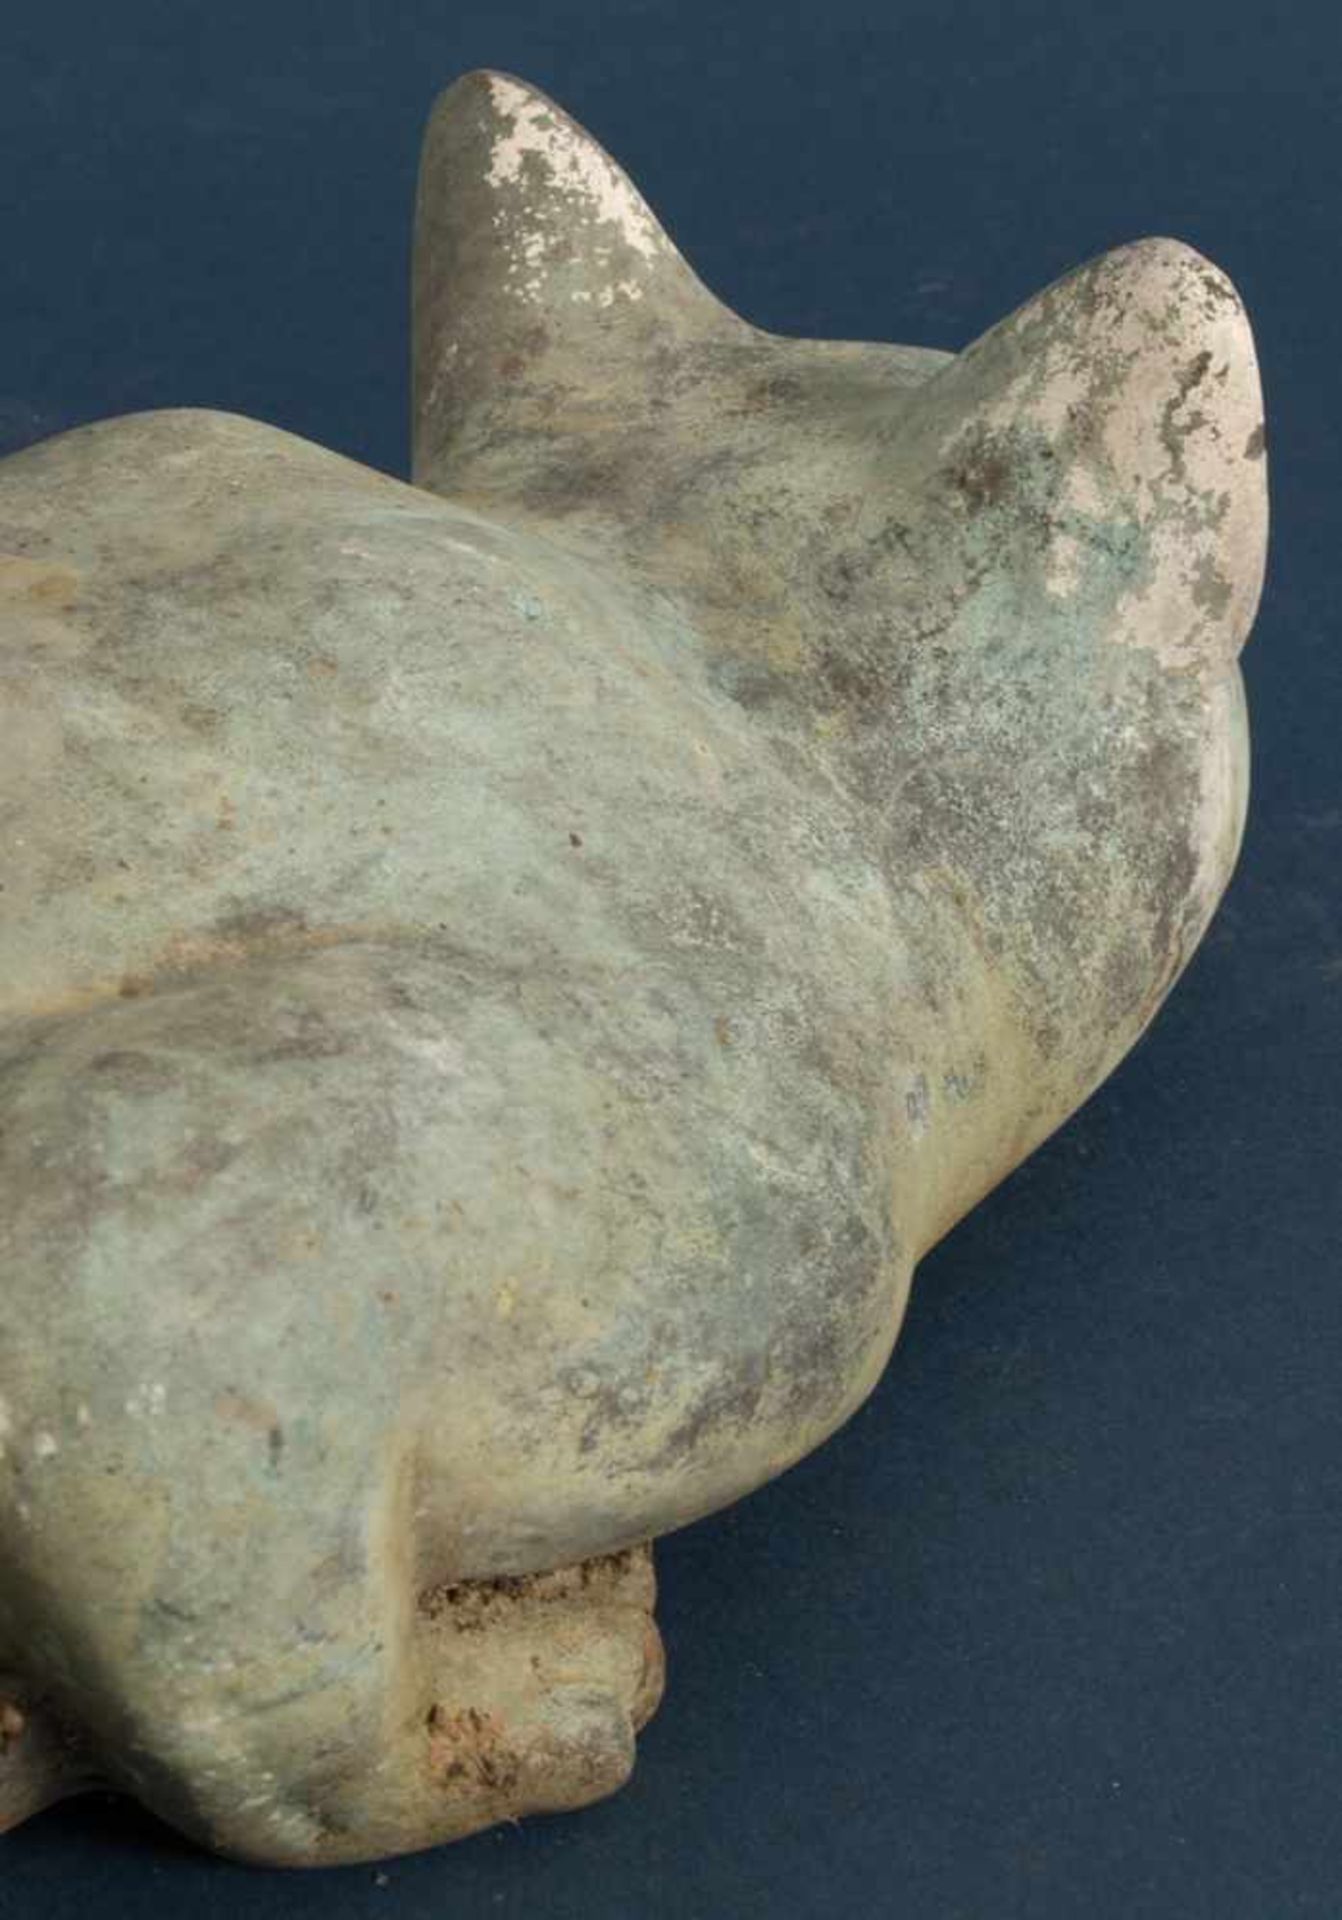 "Anpirschende, lauernde Katze" - Messing oder Bronze, Länge ca. 37 cm, grünlich - bläuliche - Image 6 of 12